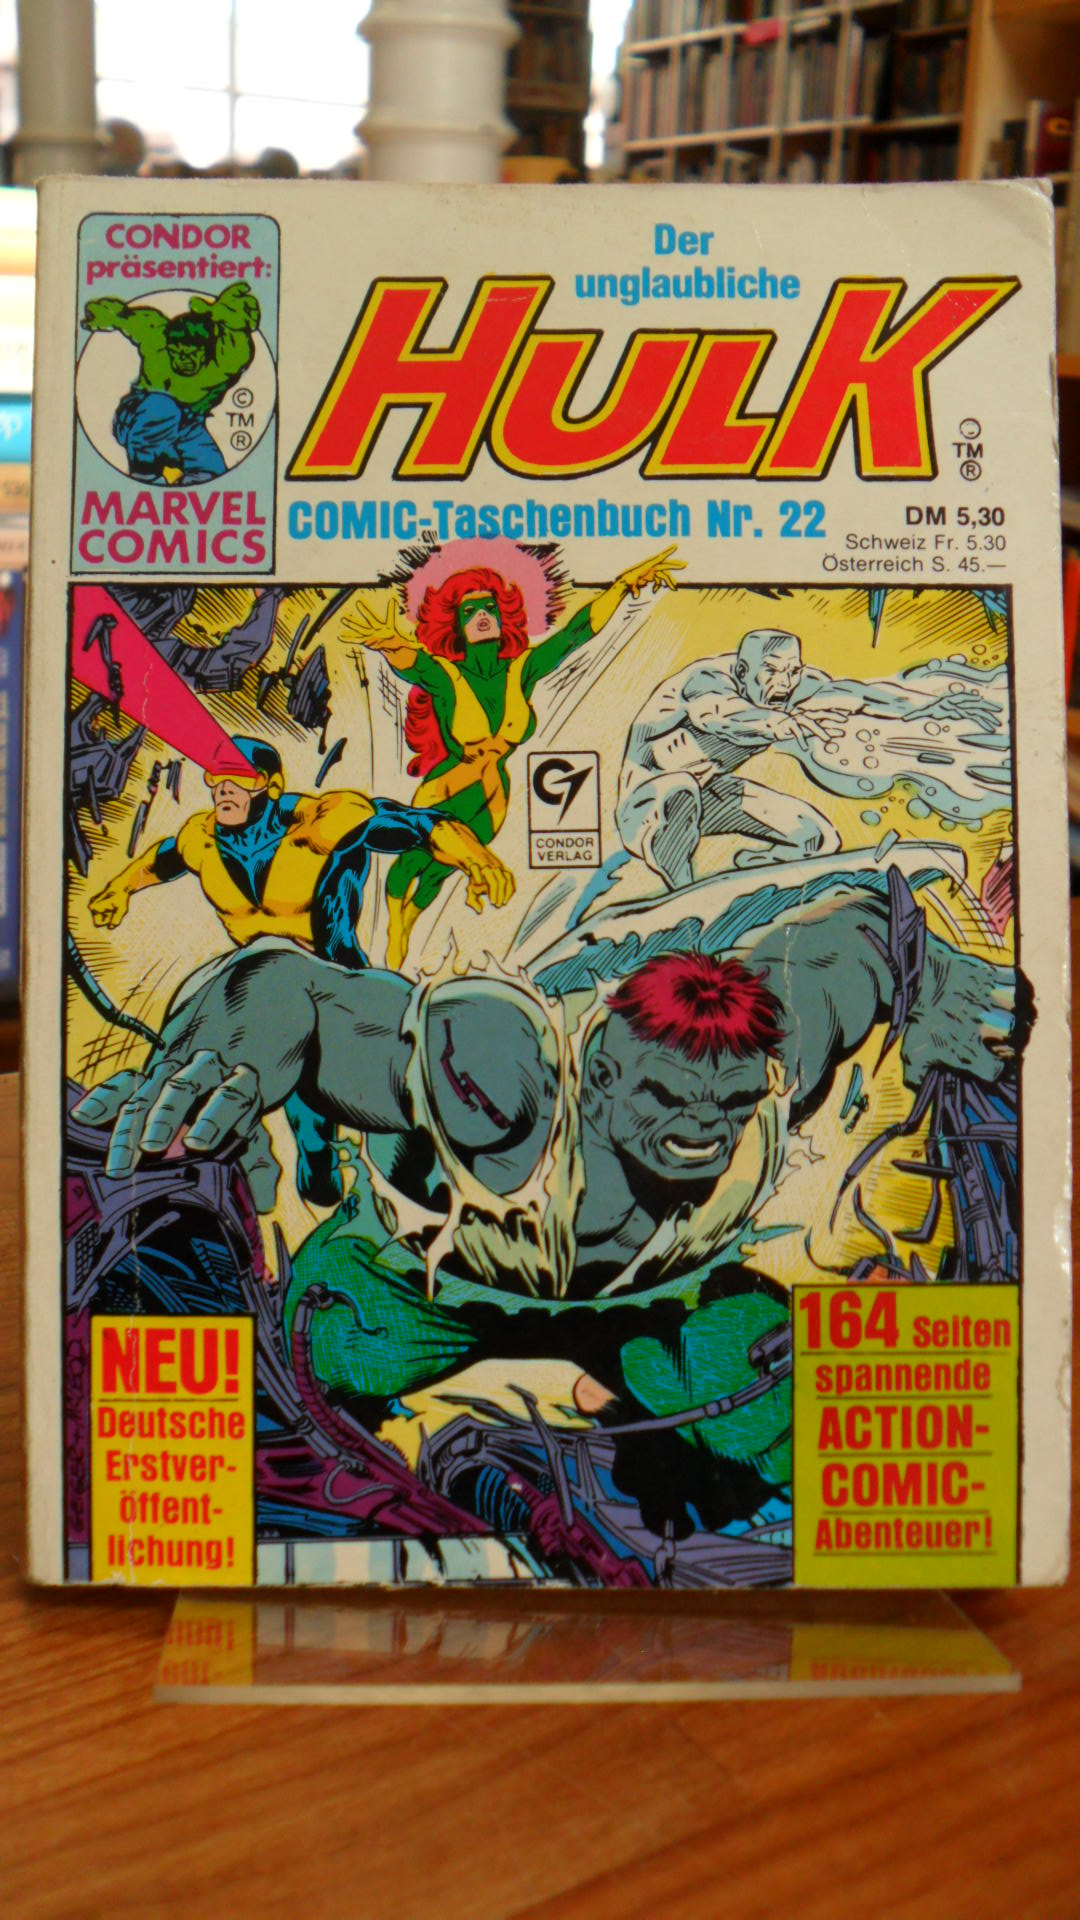 Meyer, Der unglaubliche Hulk – Comic Taschenbuch Nr. 22,